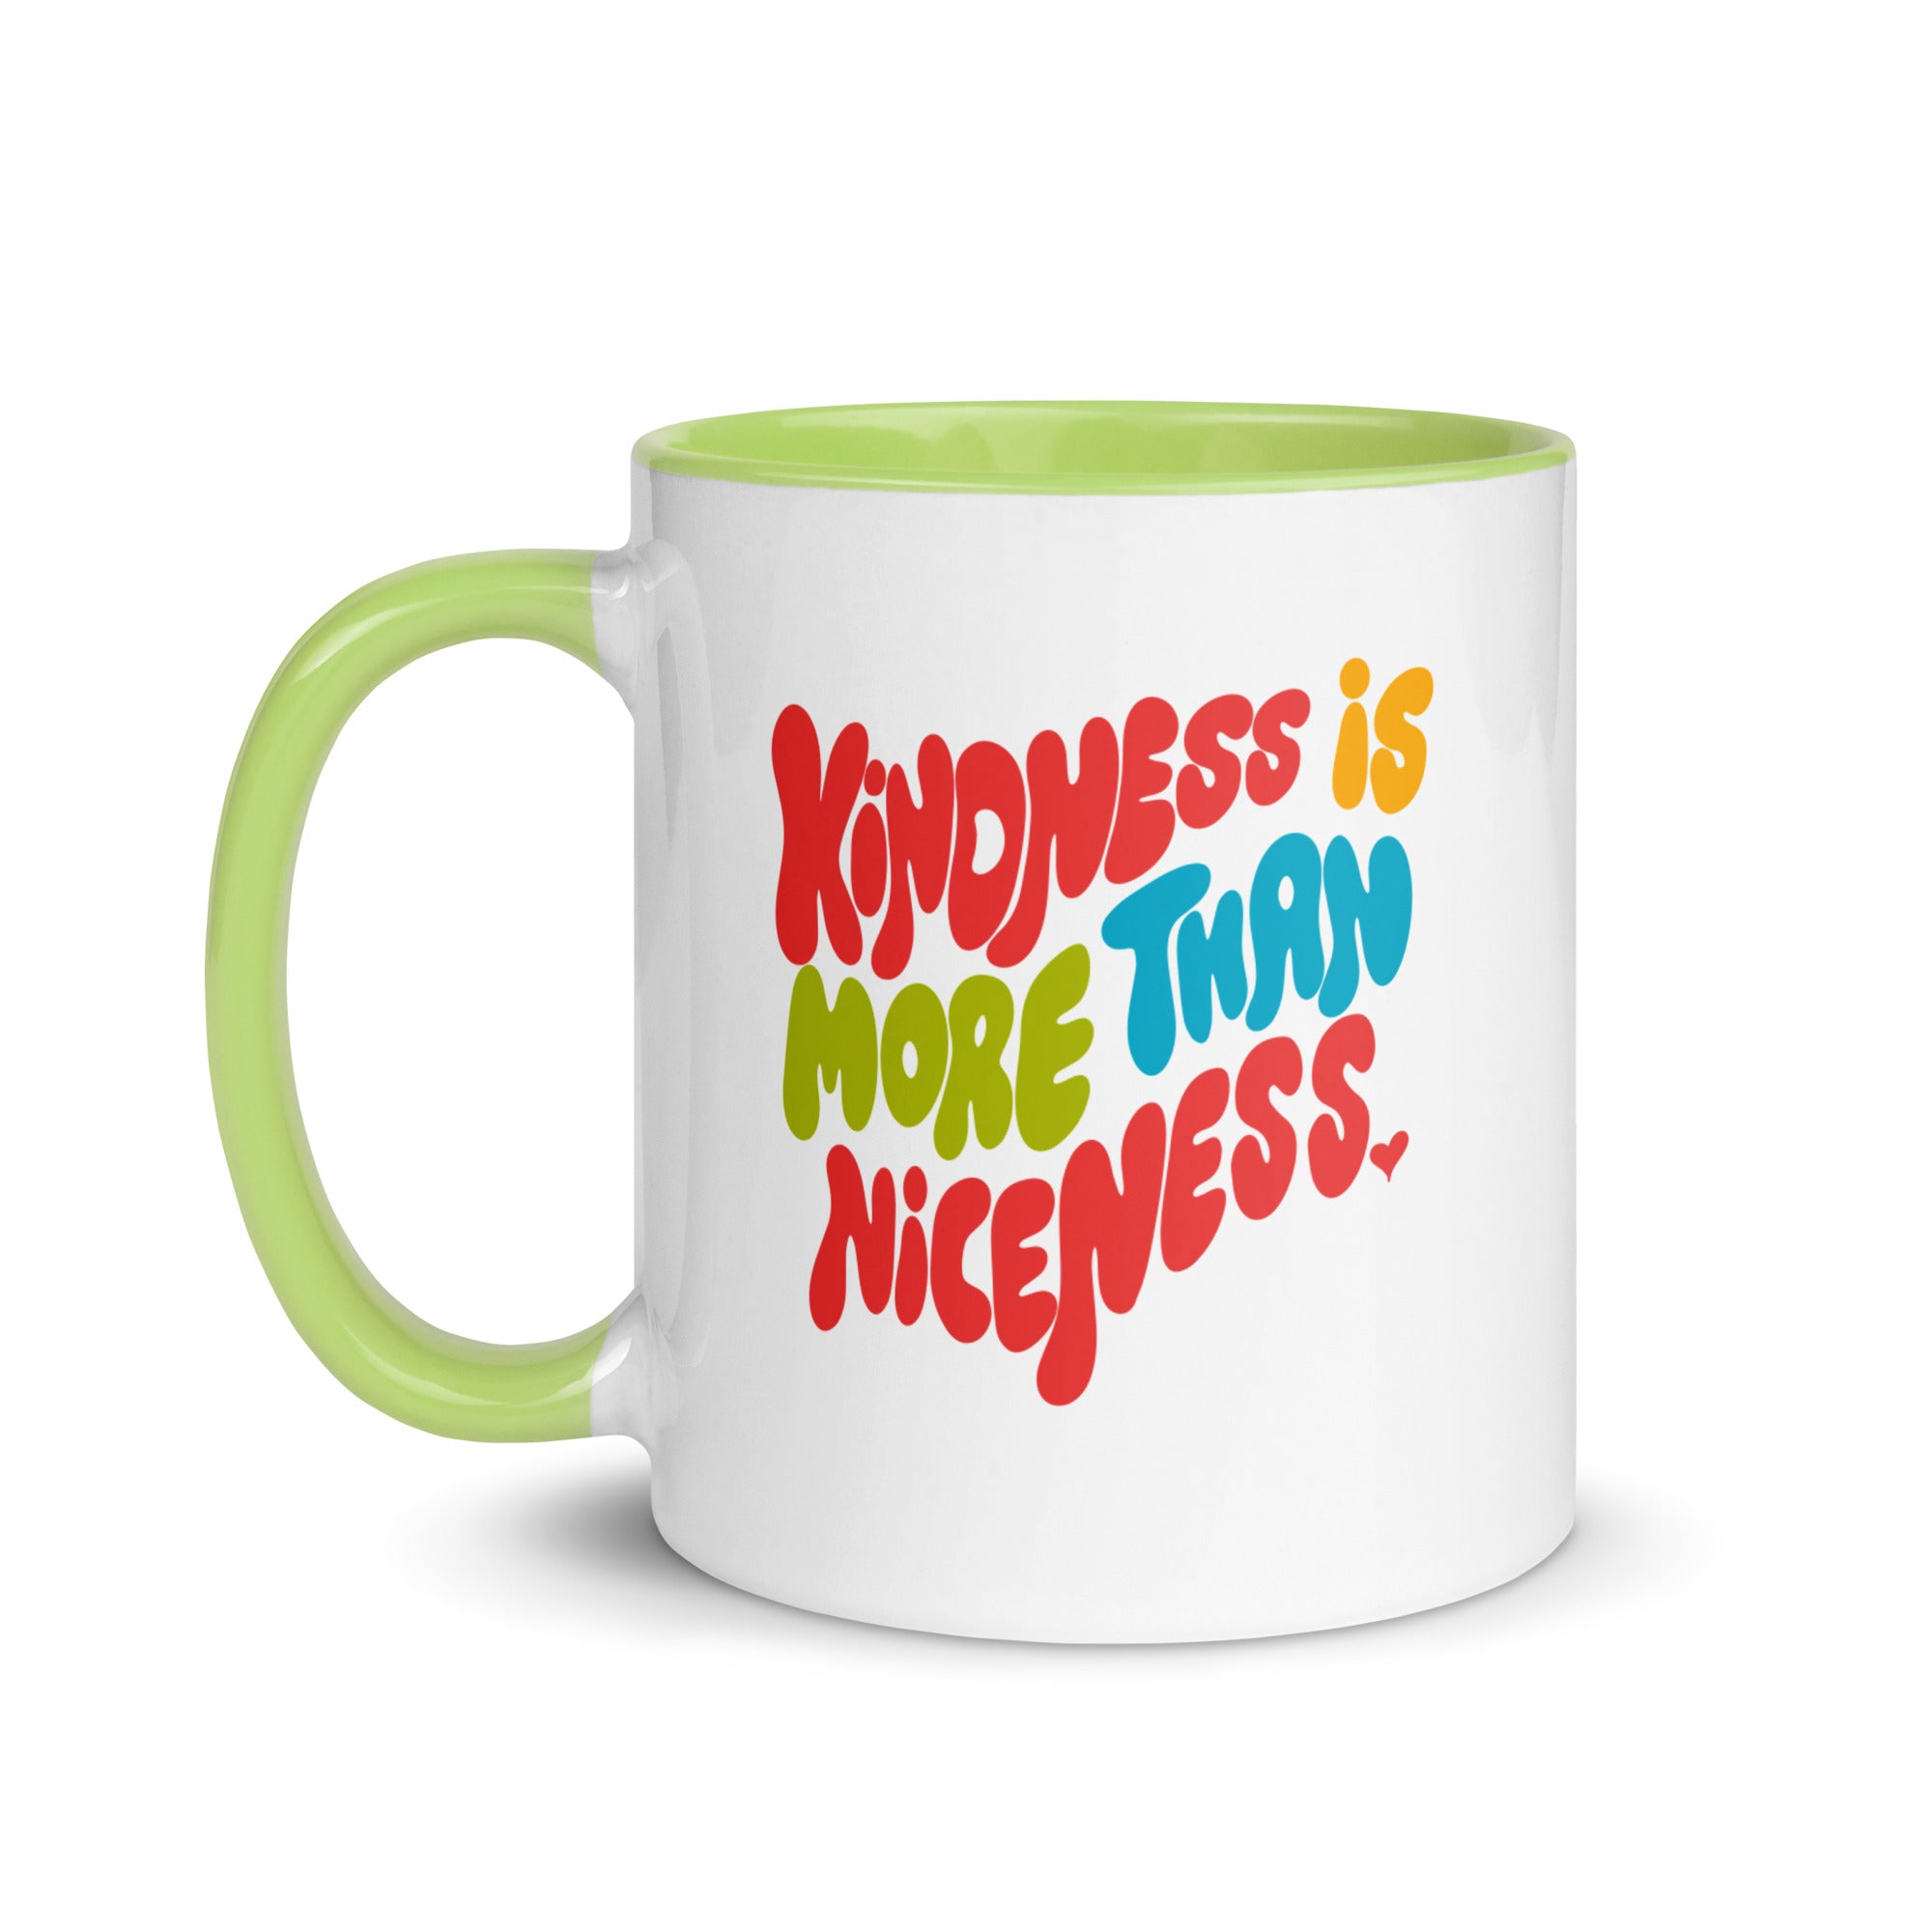 Kindness Is More Than Niceness Mug